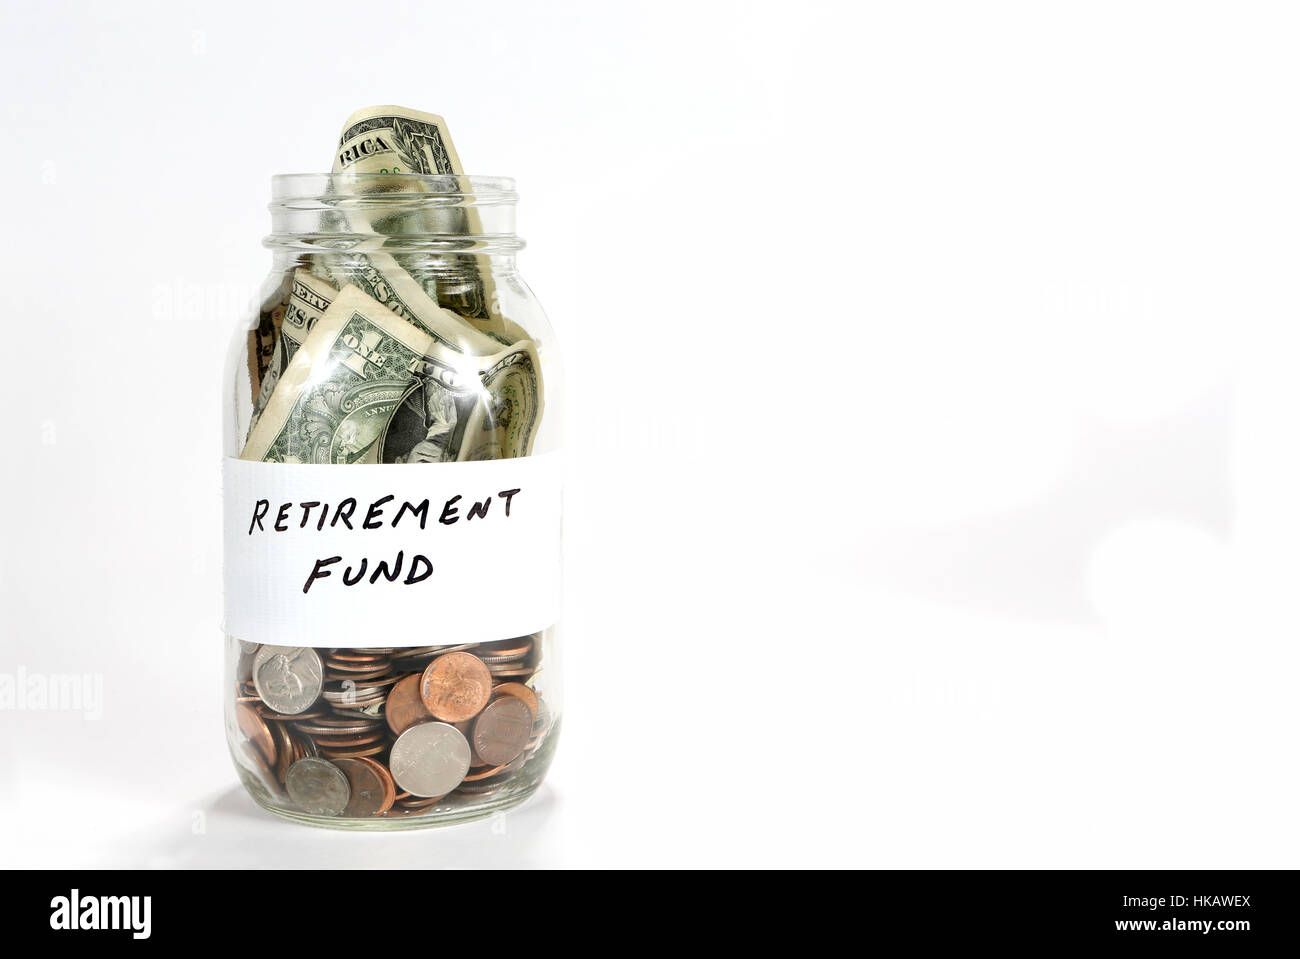 Una jarra de vidrio transparente tiene dinero para el fondo de jubilación. Foto de stock